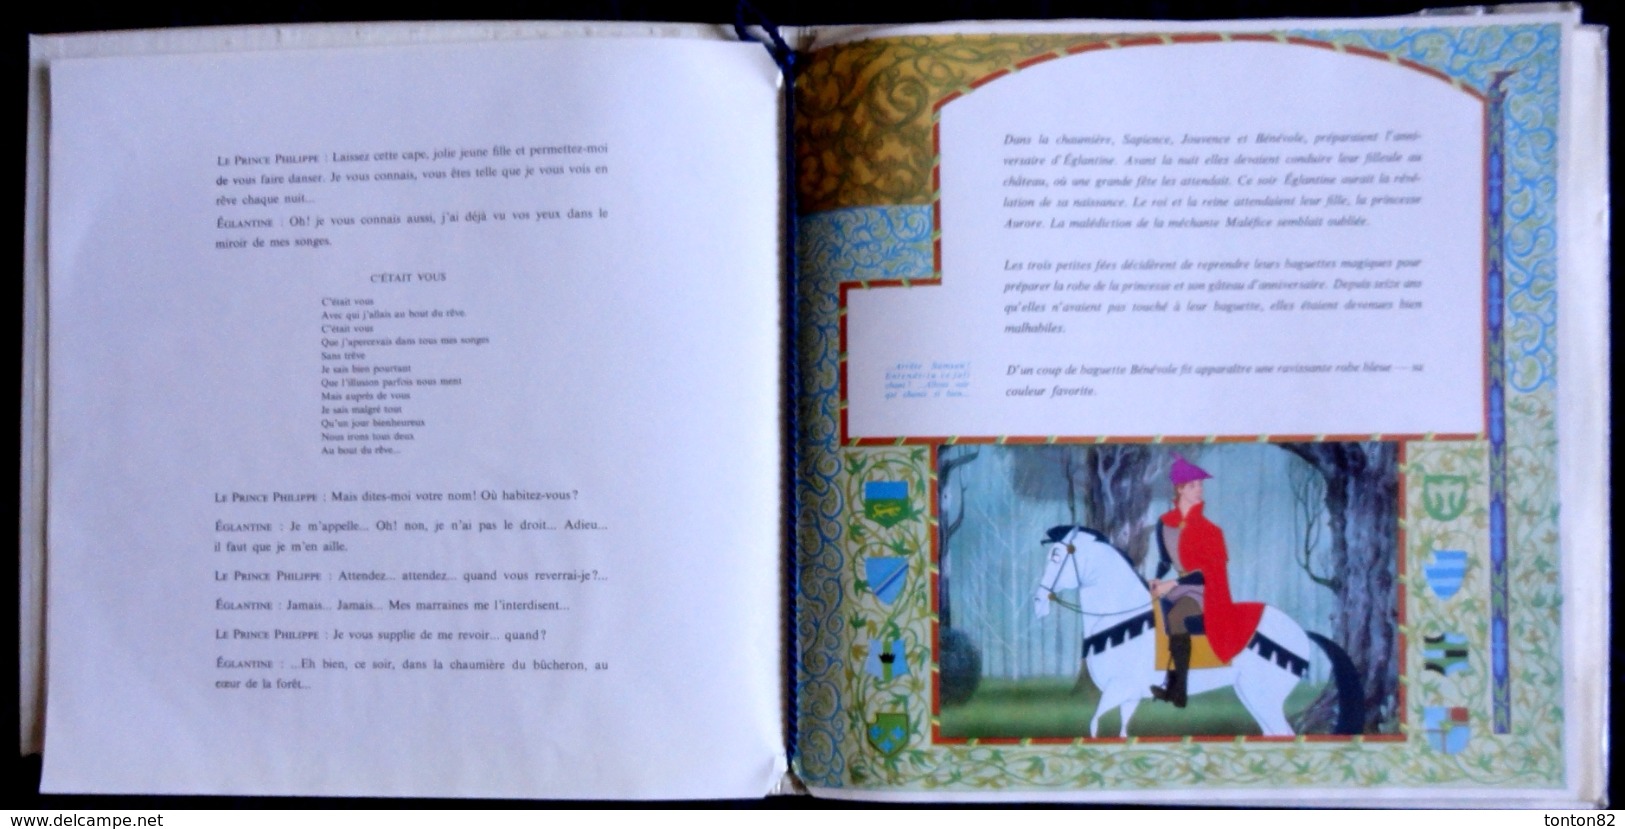 La Belle au Bois Dormant - Raconté par Michèle Morgan - Livre et Disque 33 T. - Un Album du Petit Ménestrel n°45 - 1959